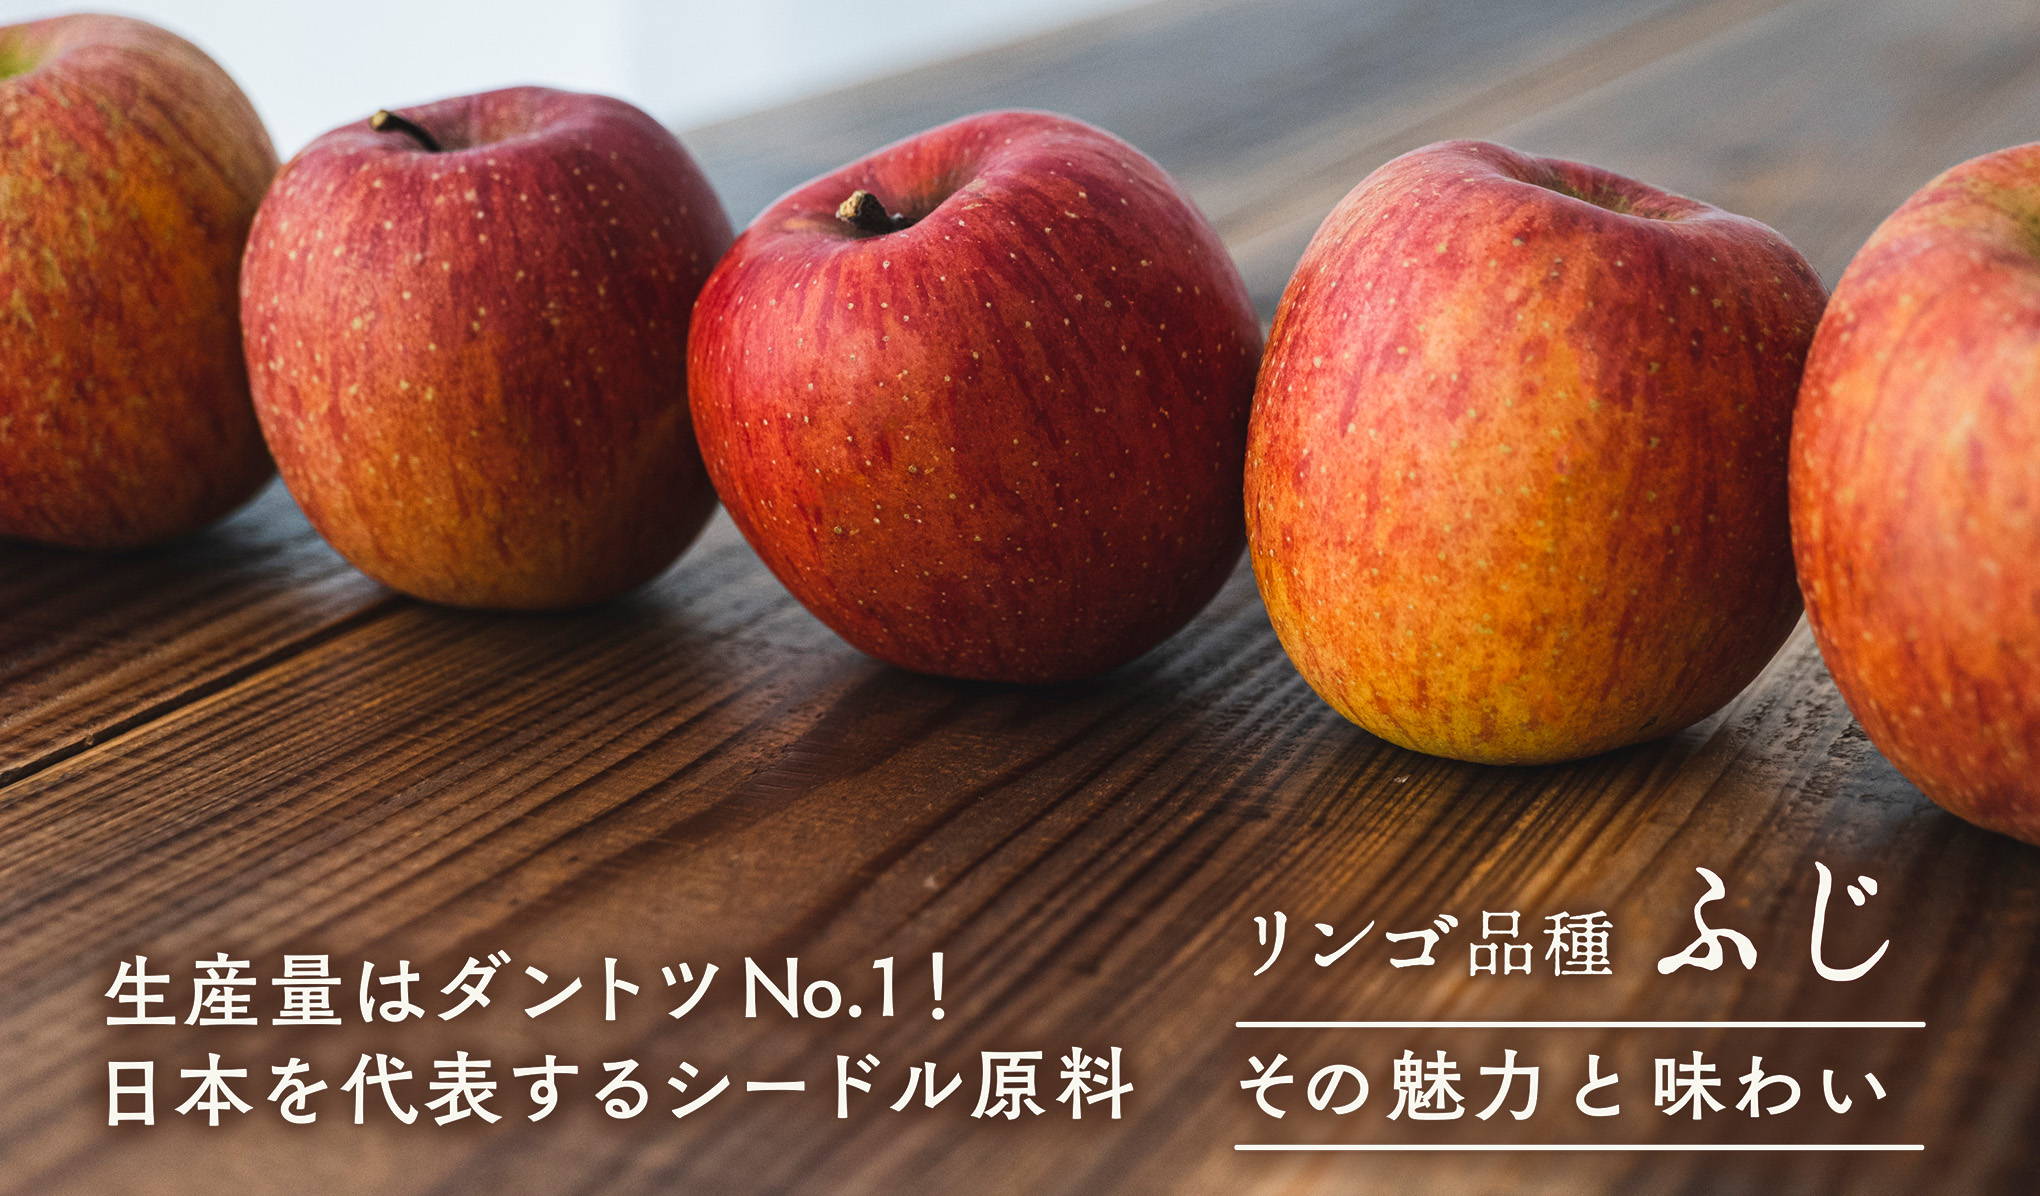 － その魅力と味わい － 生産量はダントツNo.1！日本を代表するシードル原料、リンゴ品種「ふじ」